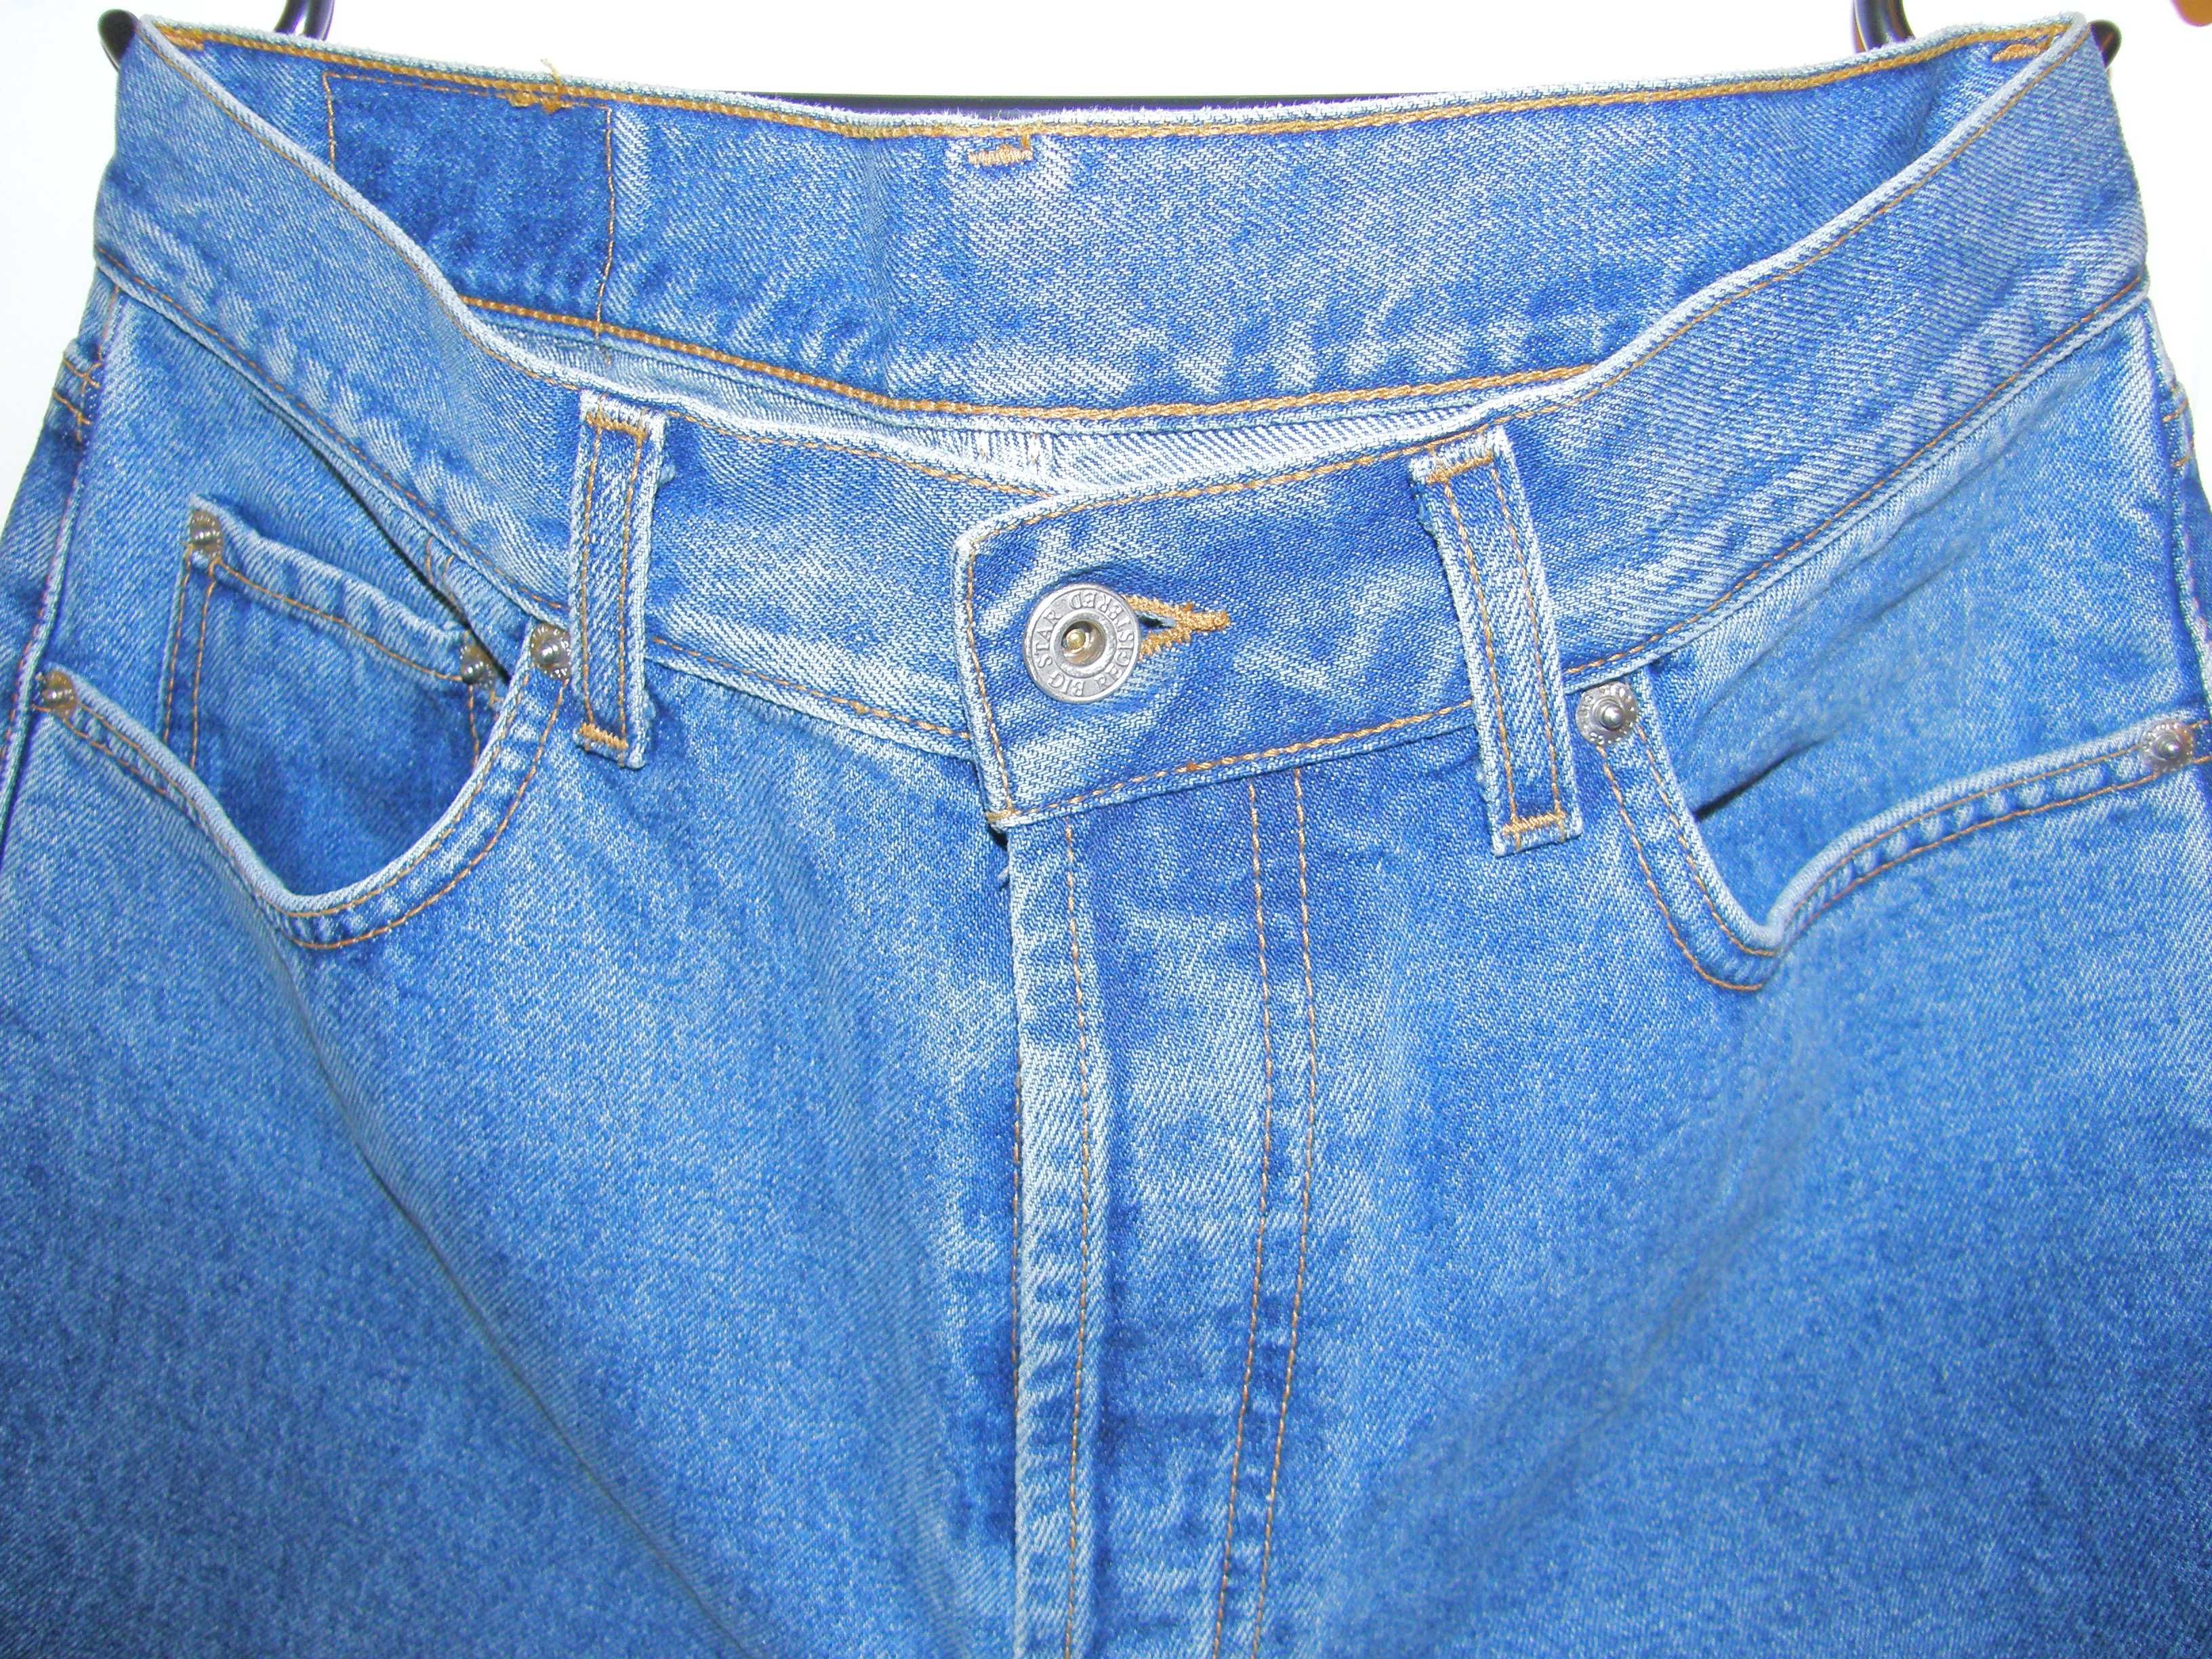 Spodnie jeansy męskie Big Star / W 34, L 36 / regular fit